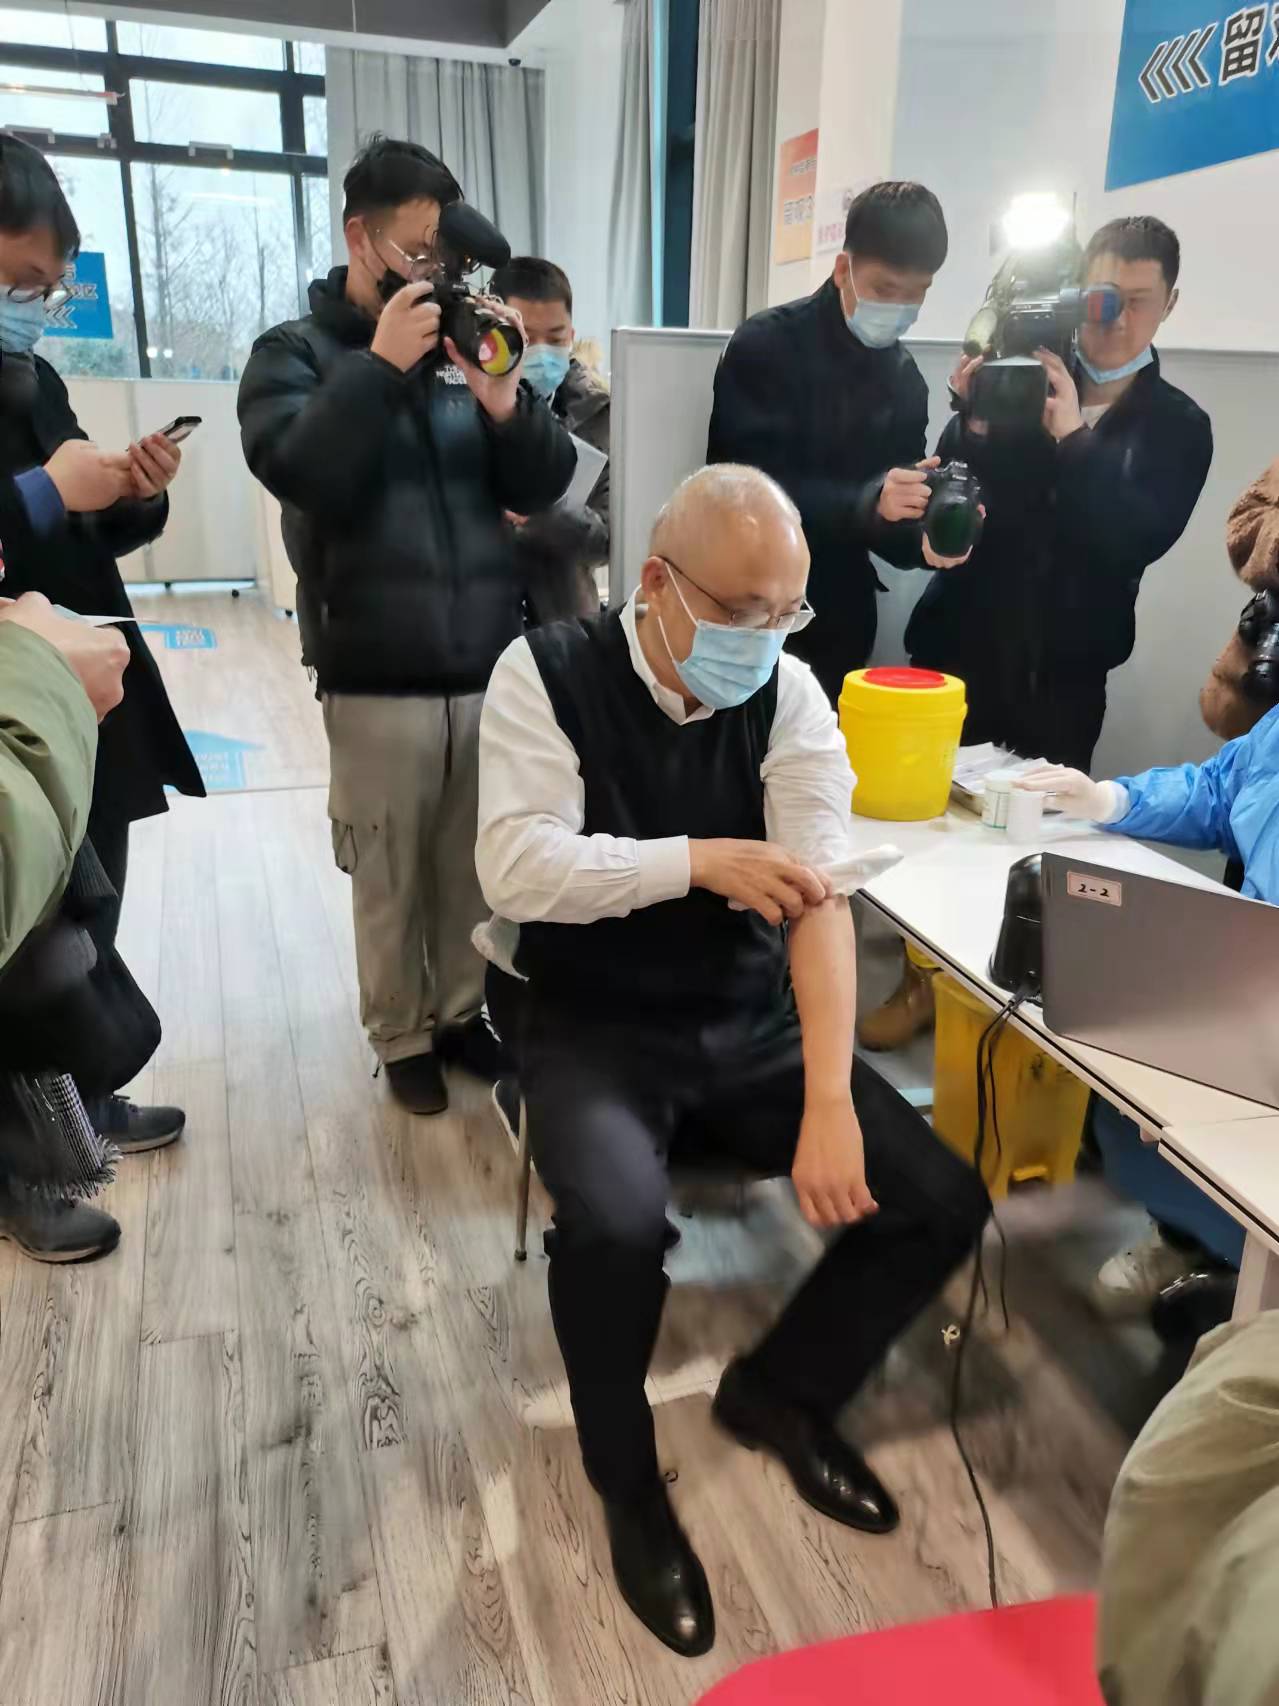 上海医药执行董事、总裁左敏在上海宝山的一处新冠疫苗临时接种点打了一针新冠疫苗